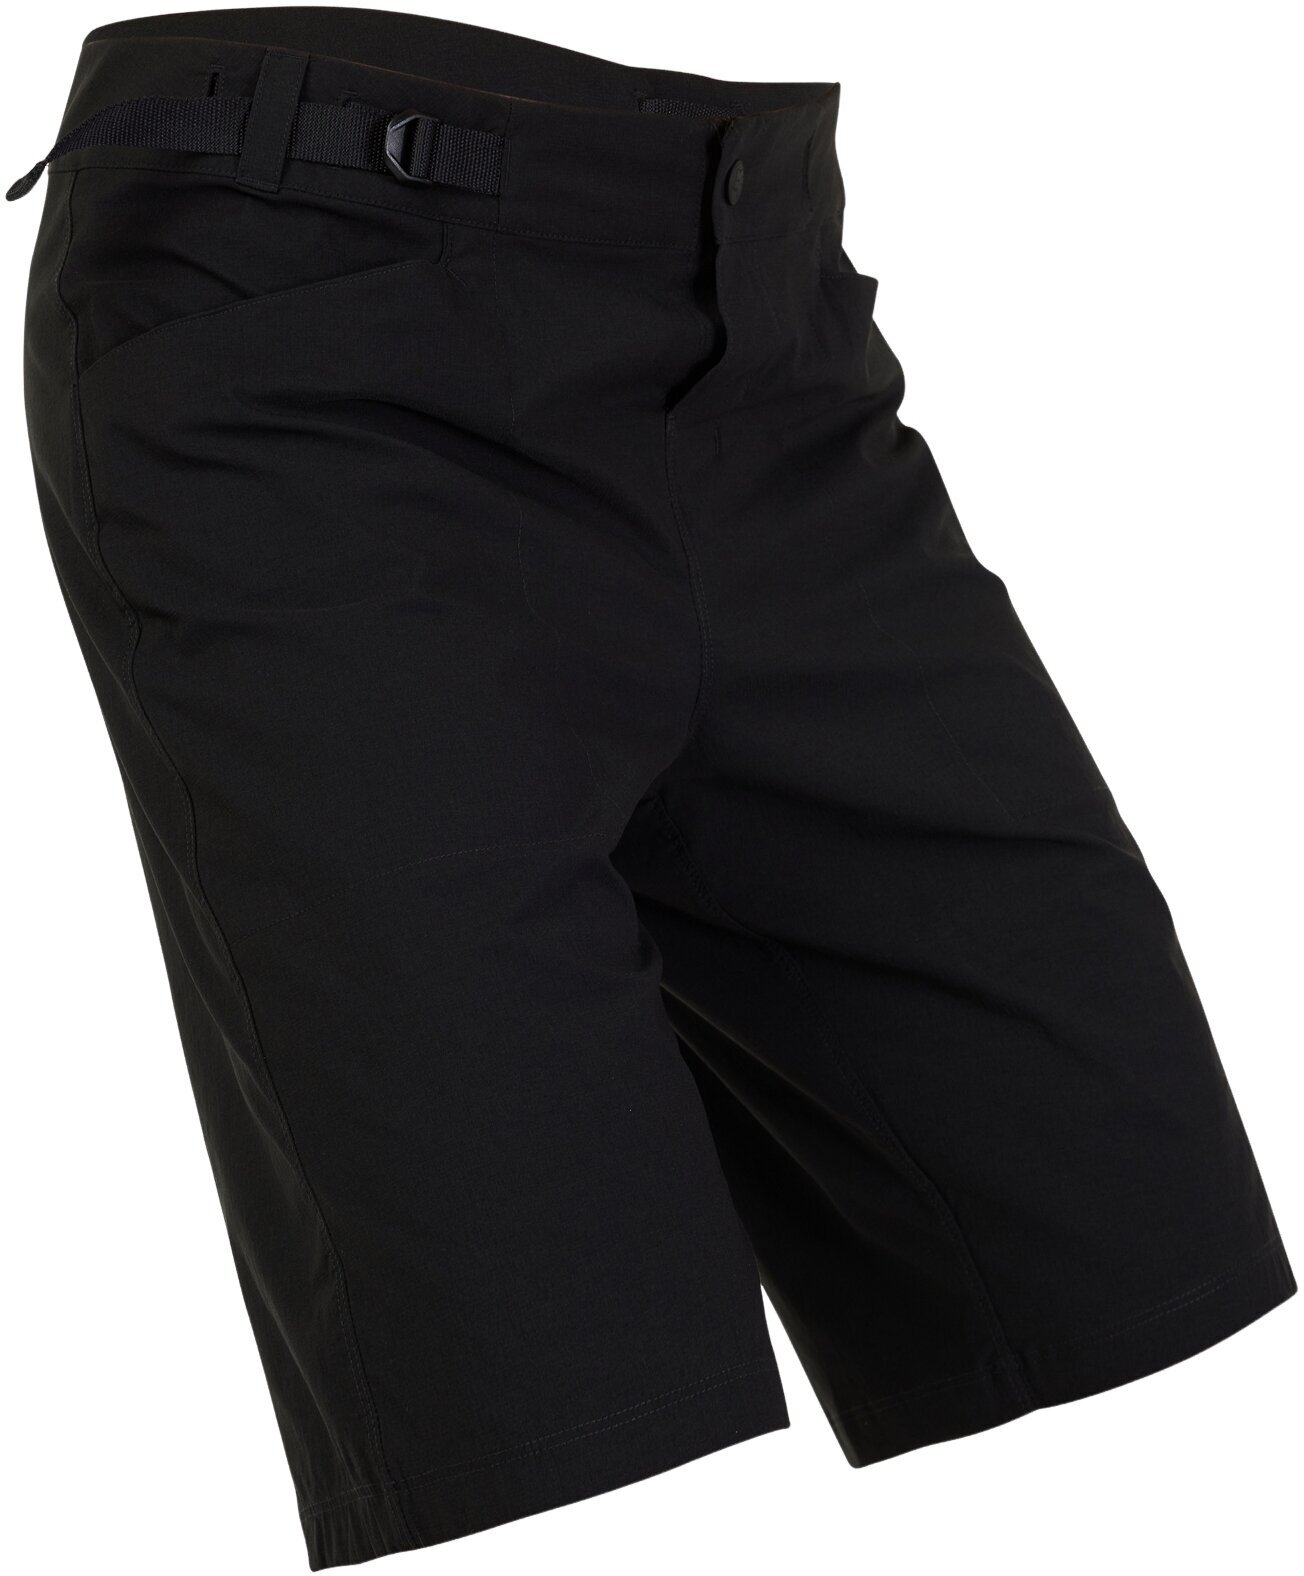 Cycling Short and pants FOX Ranger Lite Shorts Black 32 Cycling Short and pants